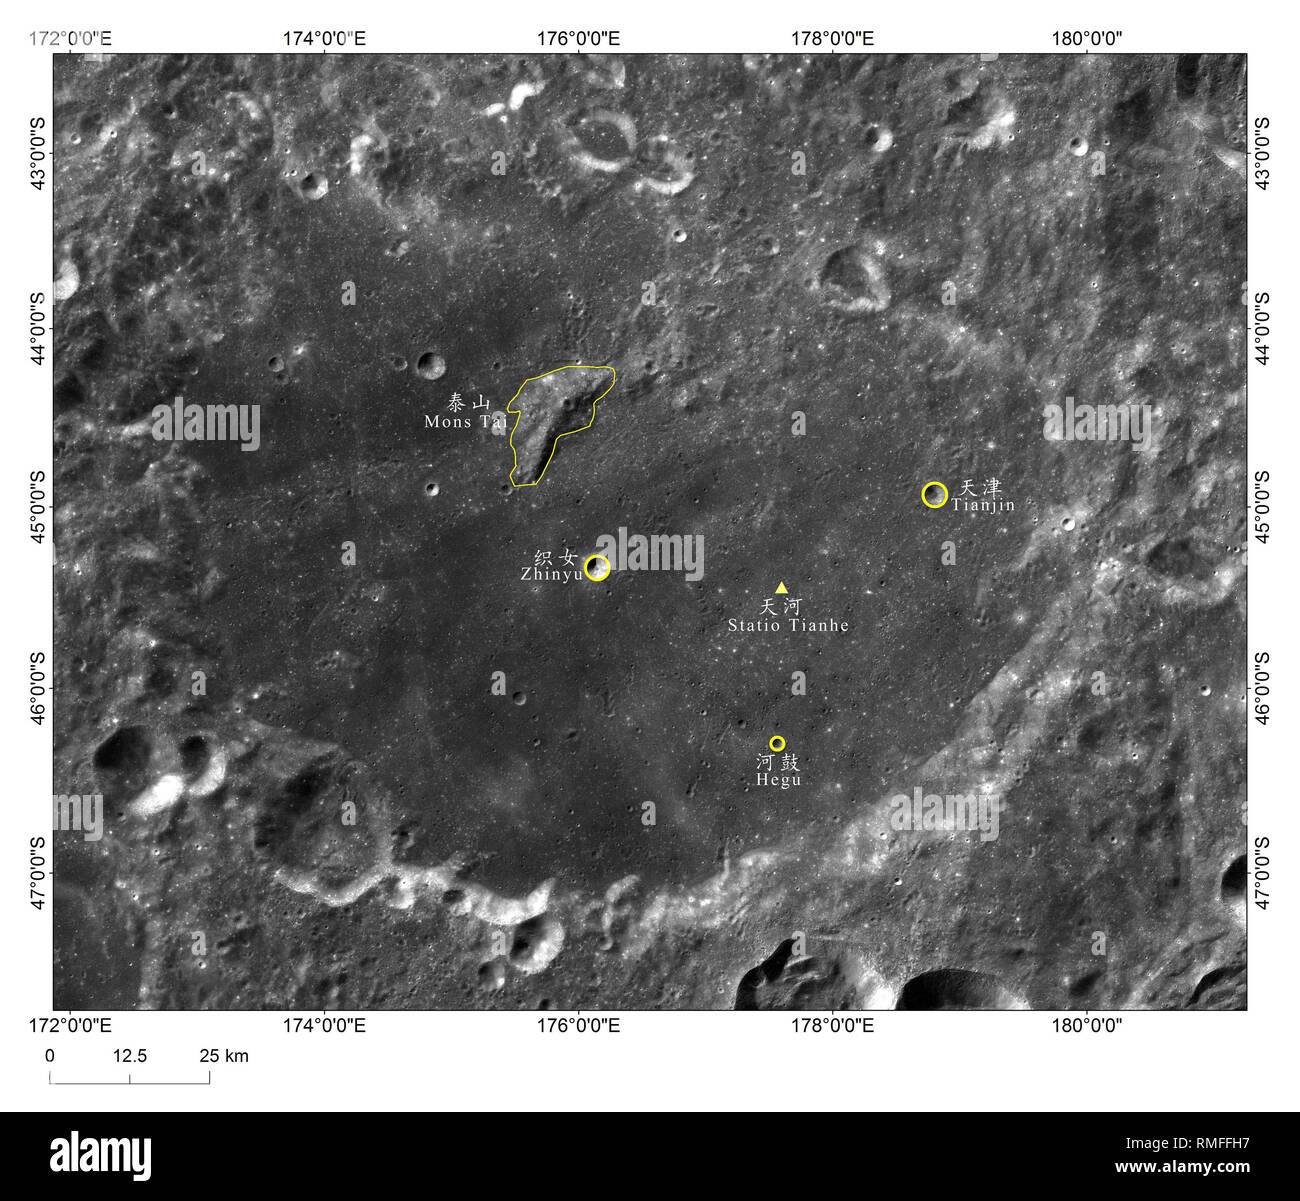 (190215) -- PECHINO, febbraio 15, 2019 (Xinhua) -- foto fornita dalla China National Space Administration (CNSA) mostra l'immagine del sito di atterraggio della Cina al Chang'e-4 sonda lunare, 'Statio Tianhe', circondata da tre vicino a crateri da impatto e una collina. Il sito di atterraggio della Cina al Chang'e-4 sonda lunare è stato denominato 'Statio Tianhe' dopo la navicella spaziale ha reso il primo atterraggio morbido sul lato lontano della luna il mese scorso. Insieme a tre nelle vicinanze i crateri da impatto e una collina, il nome è stato approvato dalla Unione Astronomica Internazionale (IAU), Liu Jizhong, direttore del mento Foto Stock